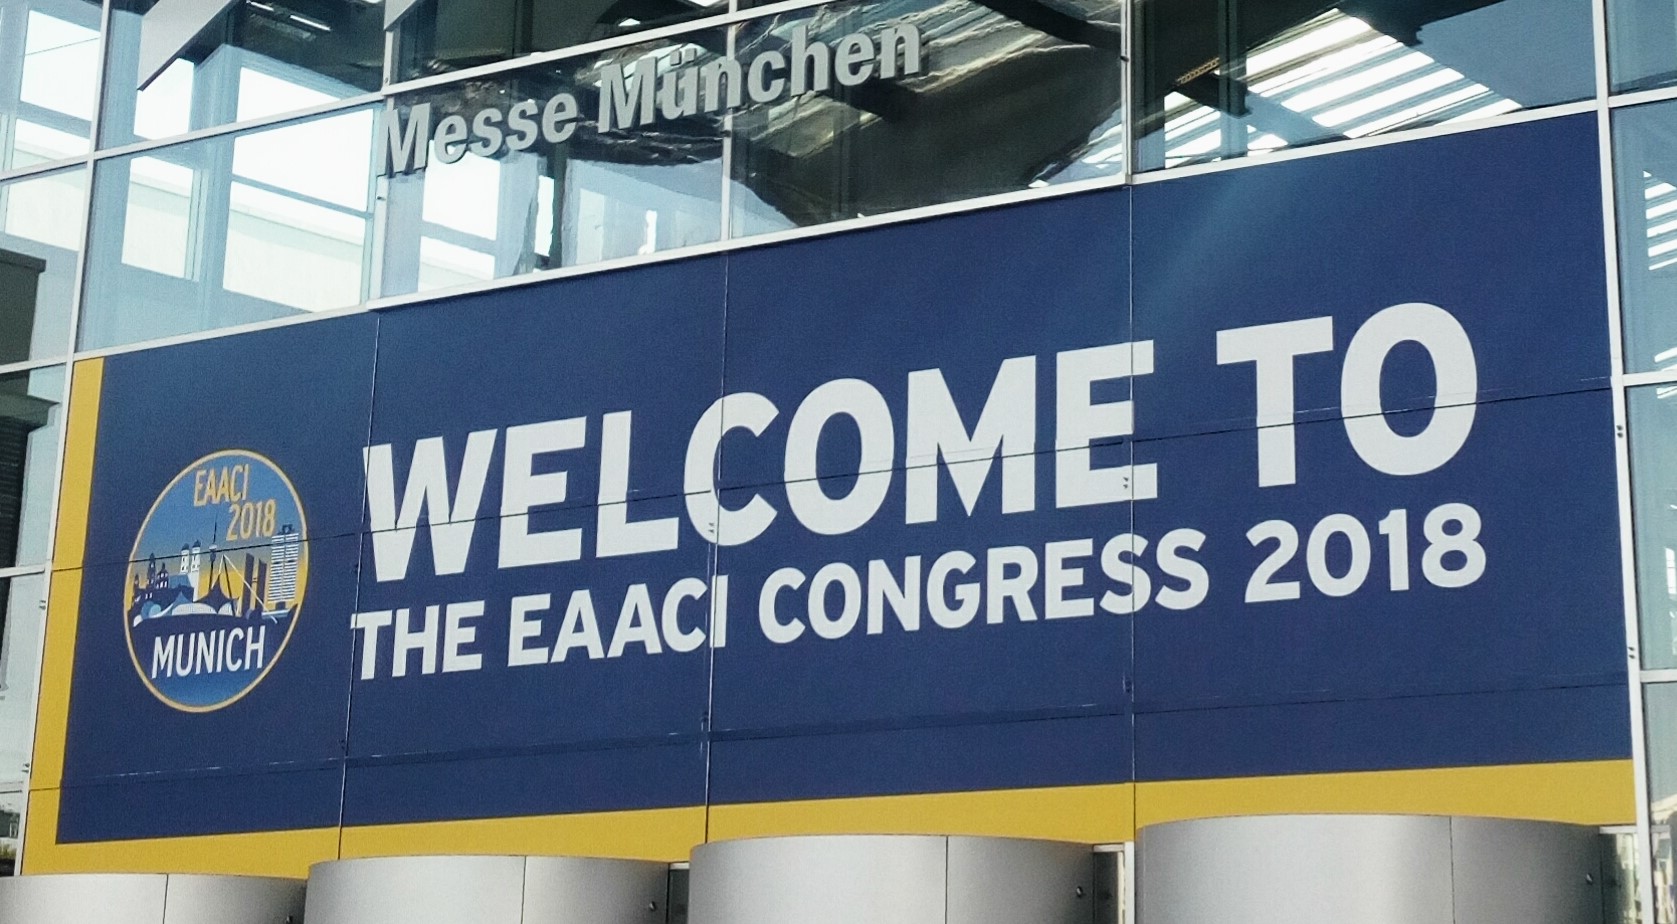 EAACI Congress 2018